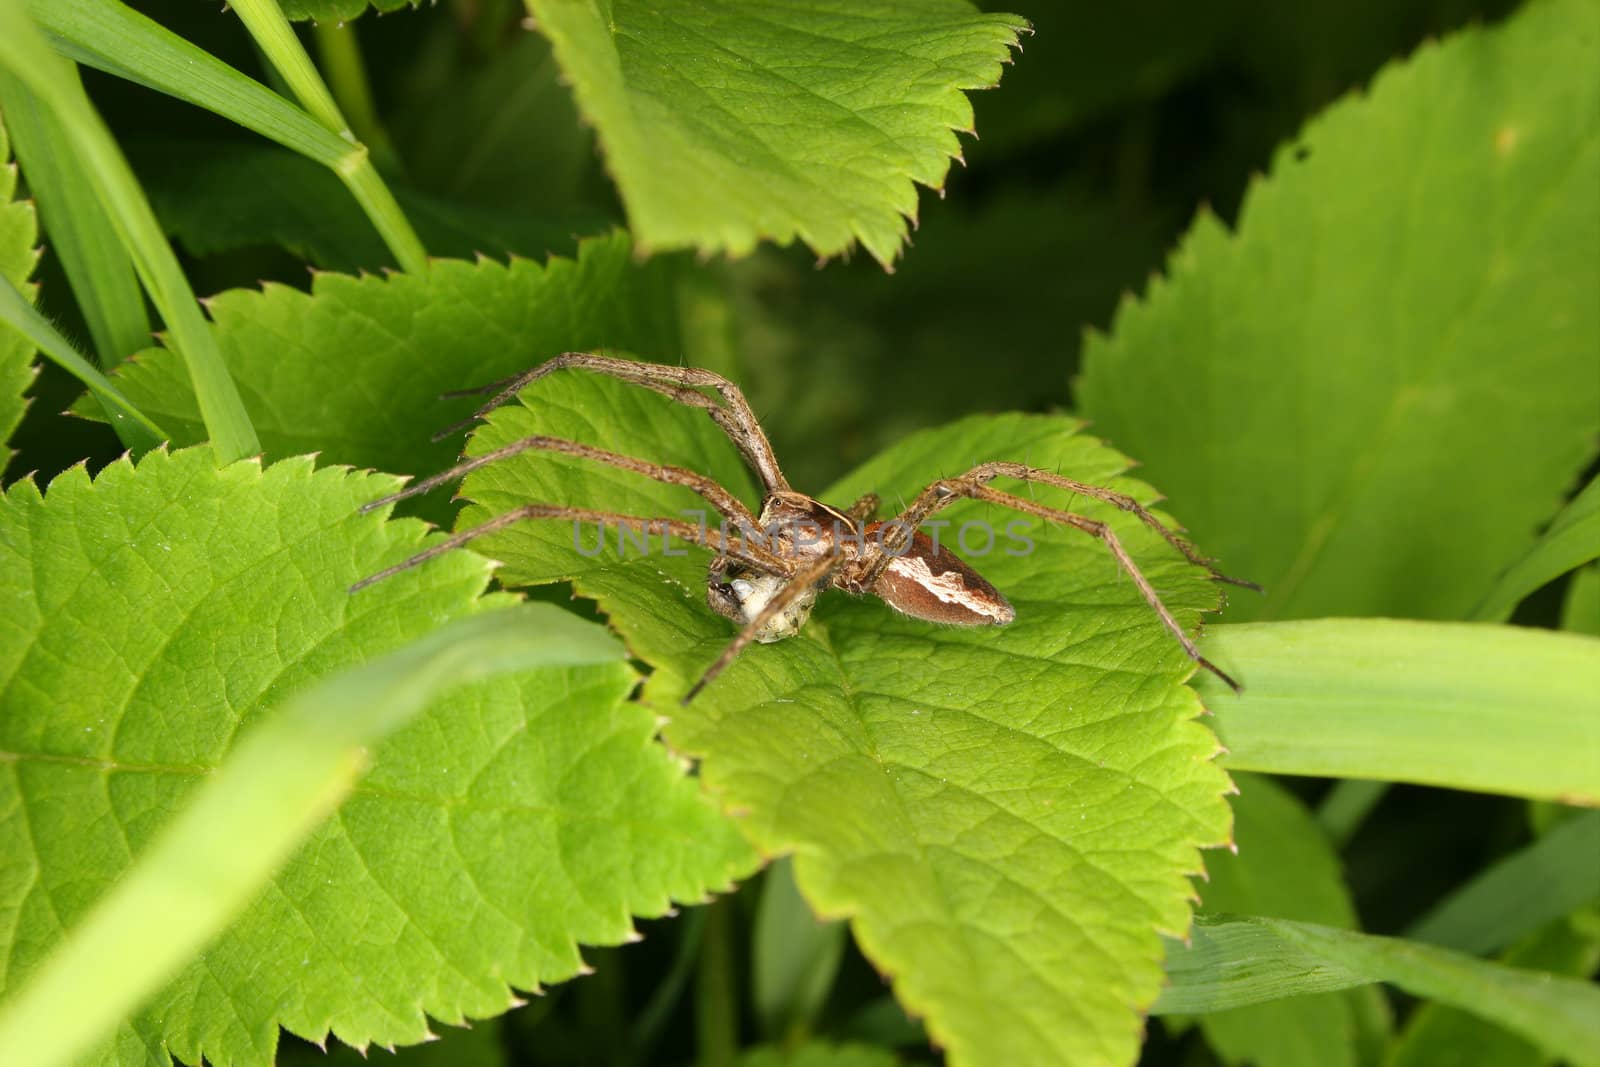 Nursery web spider (Pisaura mirabilis) by tdietrich